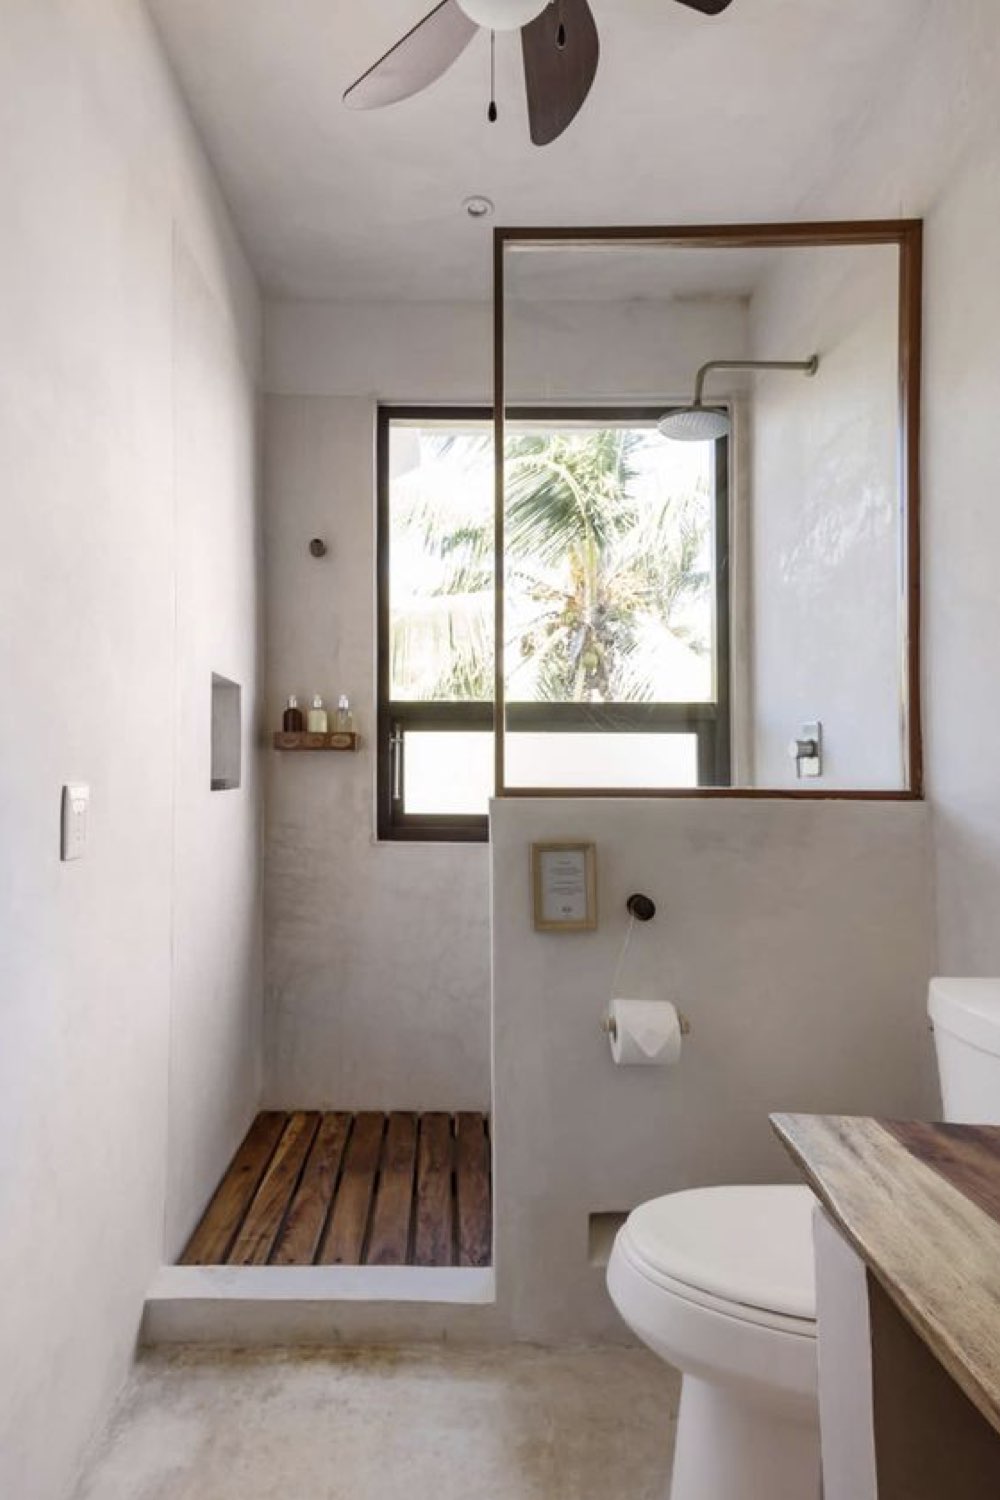 salle de bain douche deco detente  moderne épurée béton cirée sol en bois paroi soubassement tout en longueur